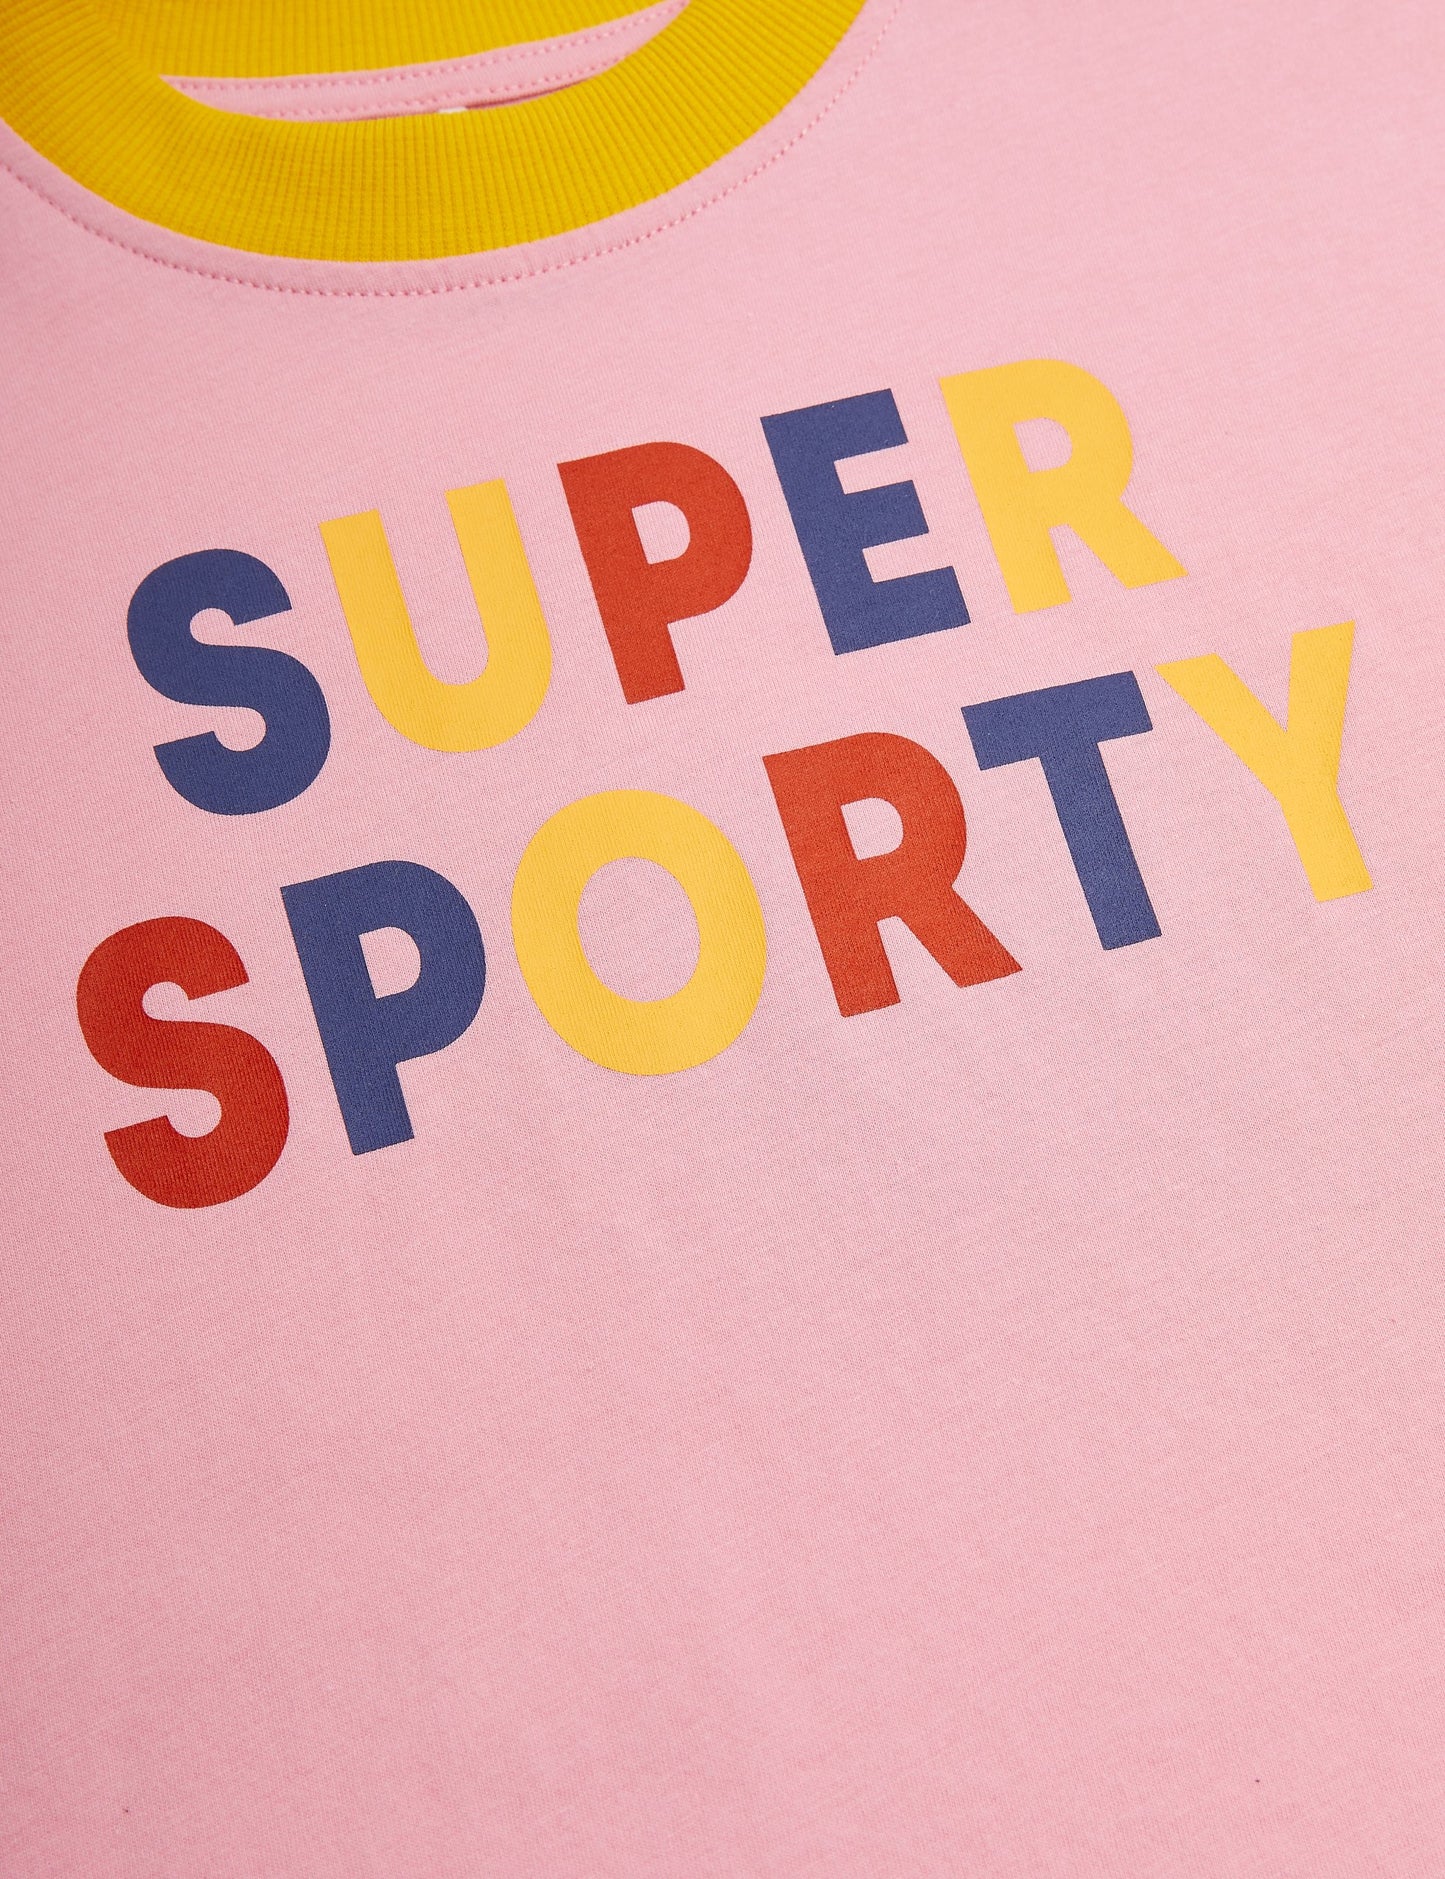 Mini Rodini Super Sporty T-Shirt - Pink